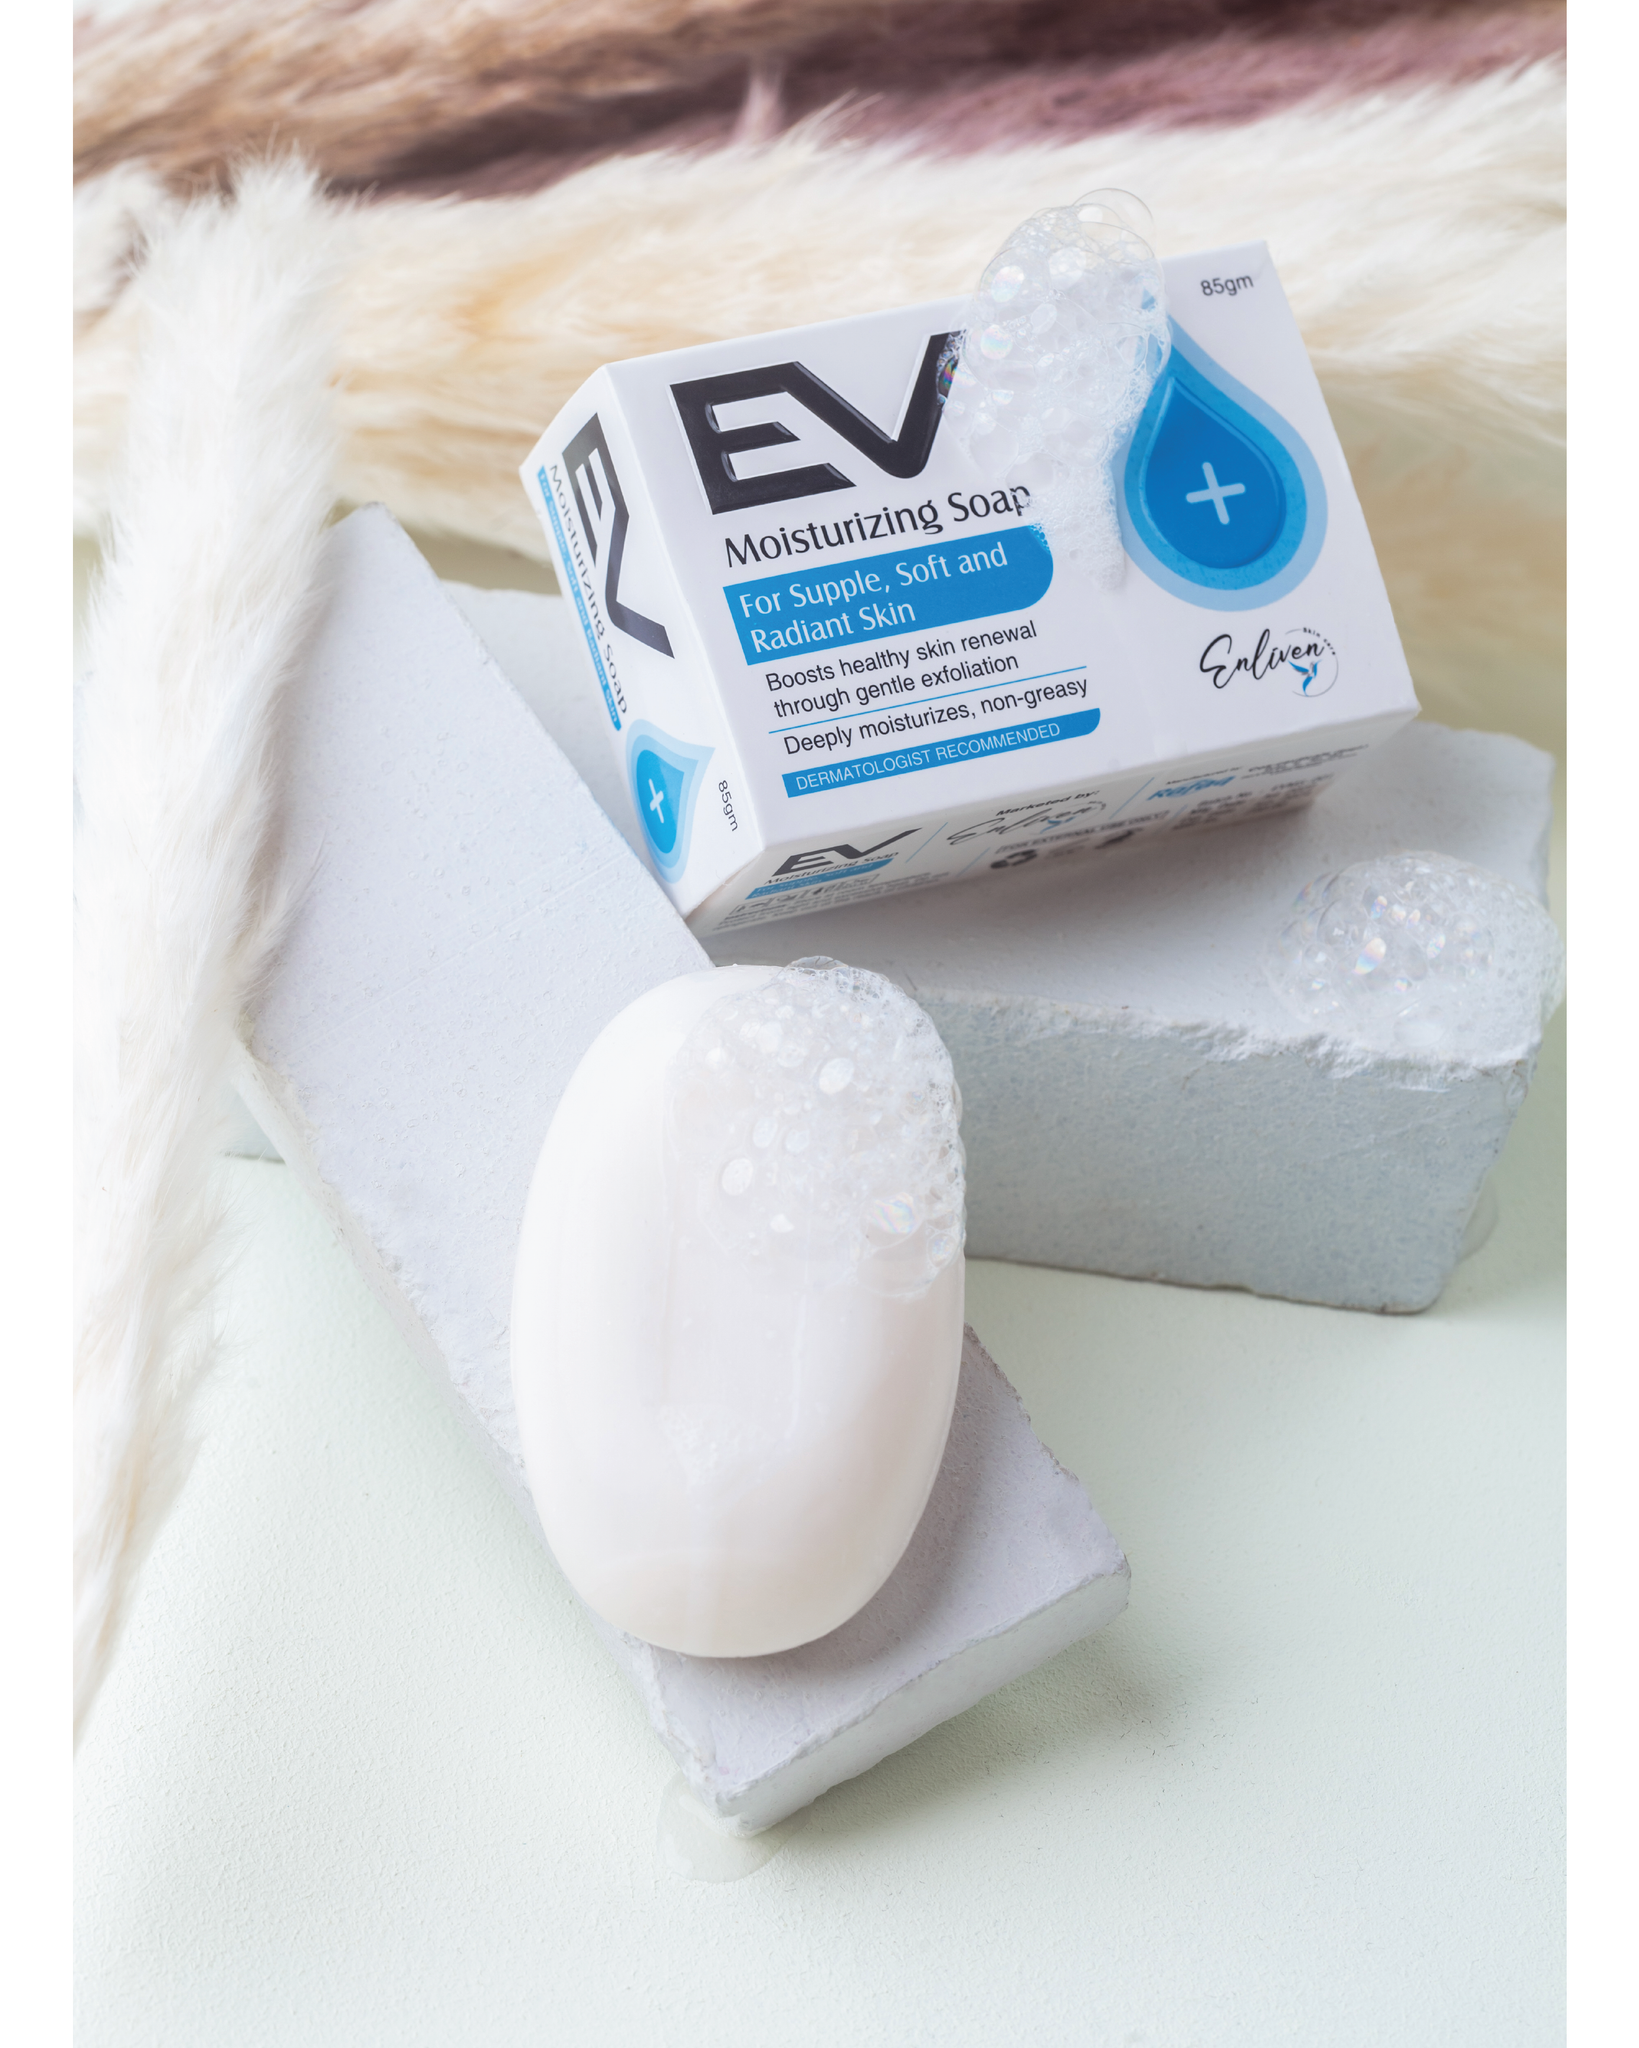 EV Moisturizing Soap